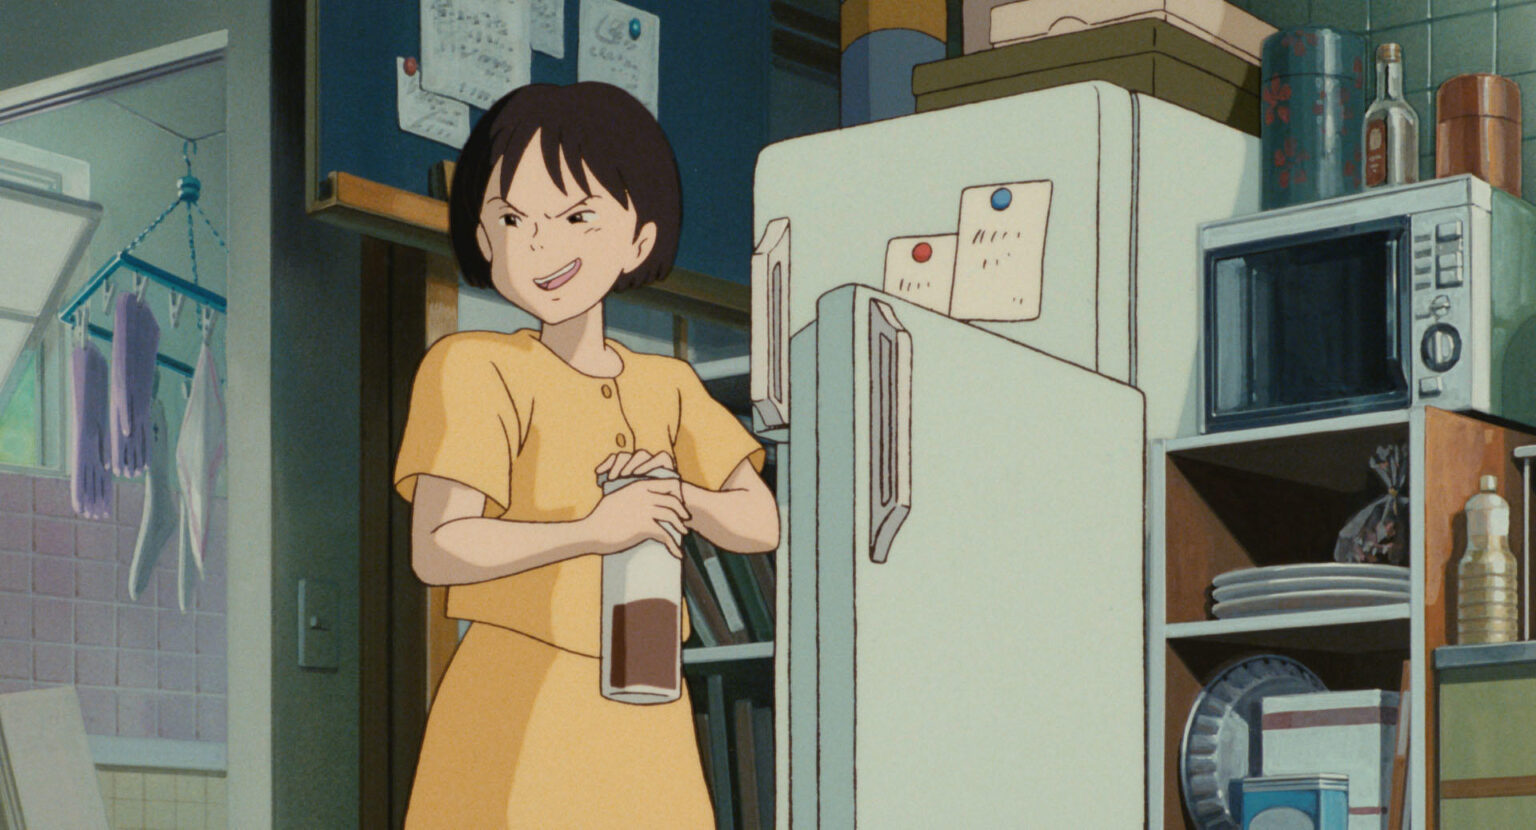 © 1995 柊あおい/集英社・Studio Ghibli・NH